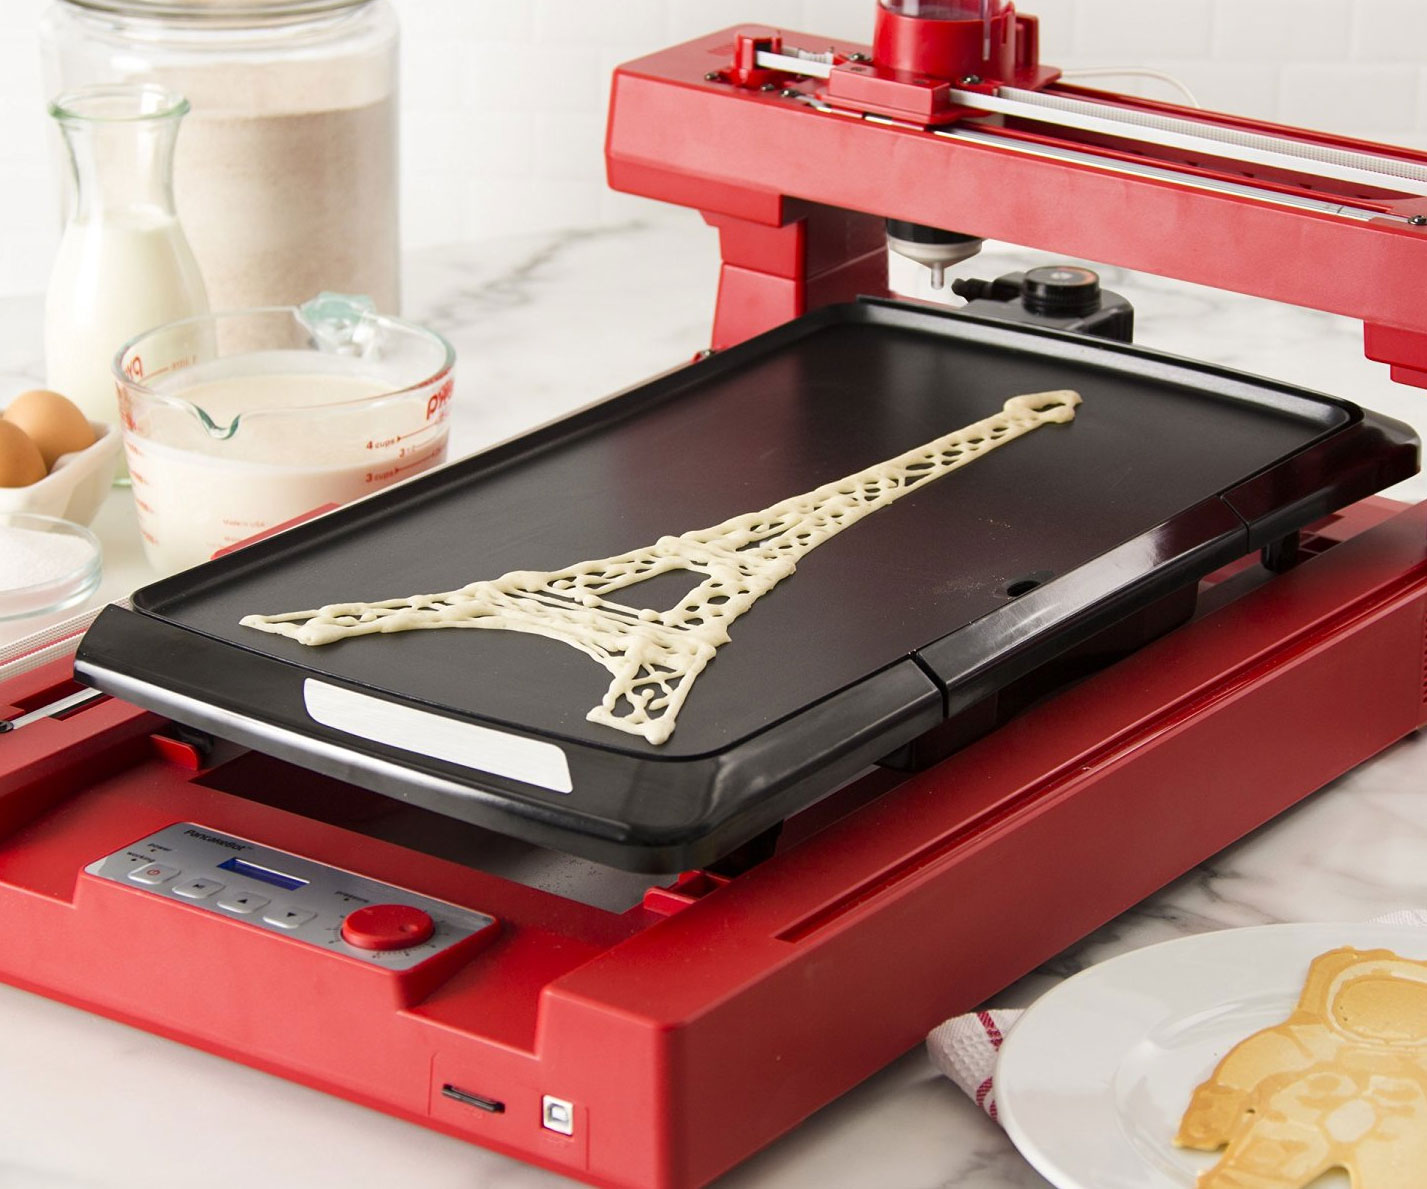 Pancake Printer